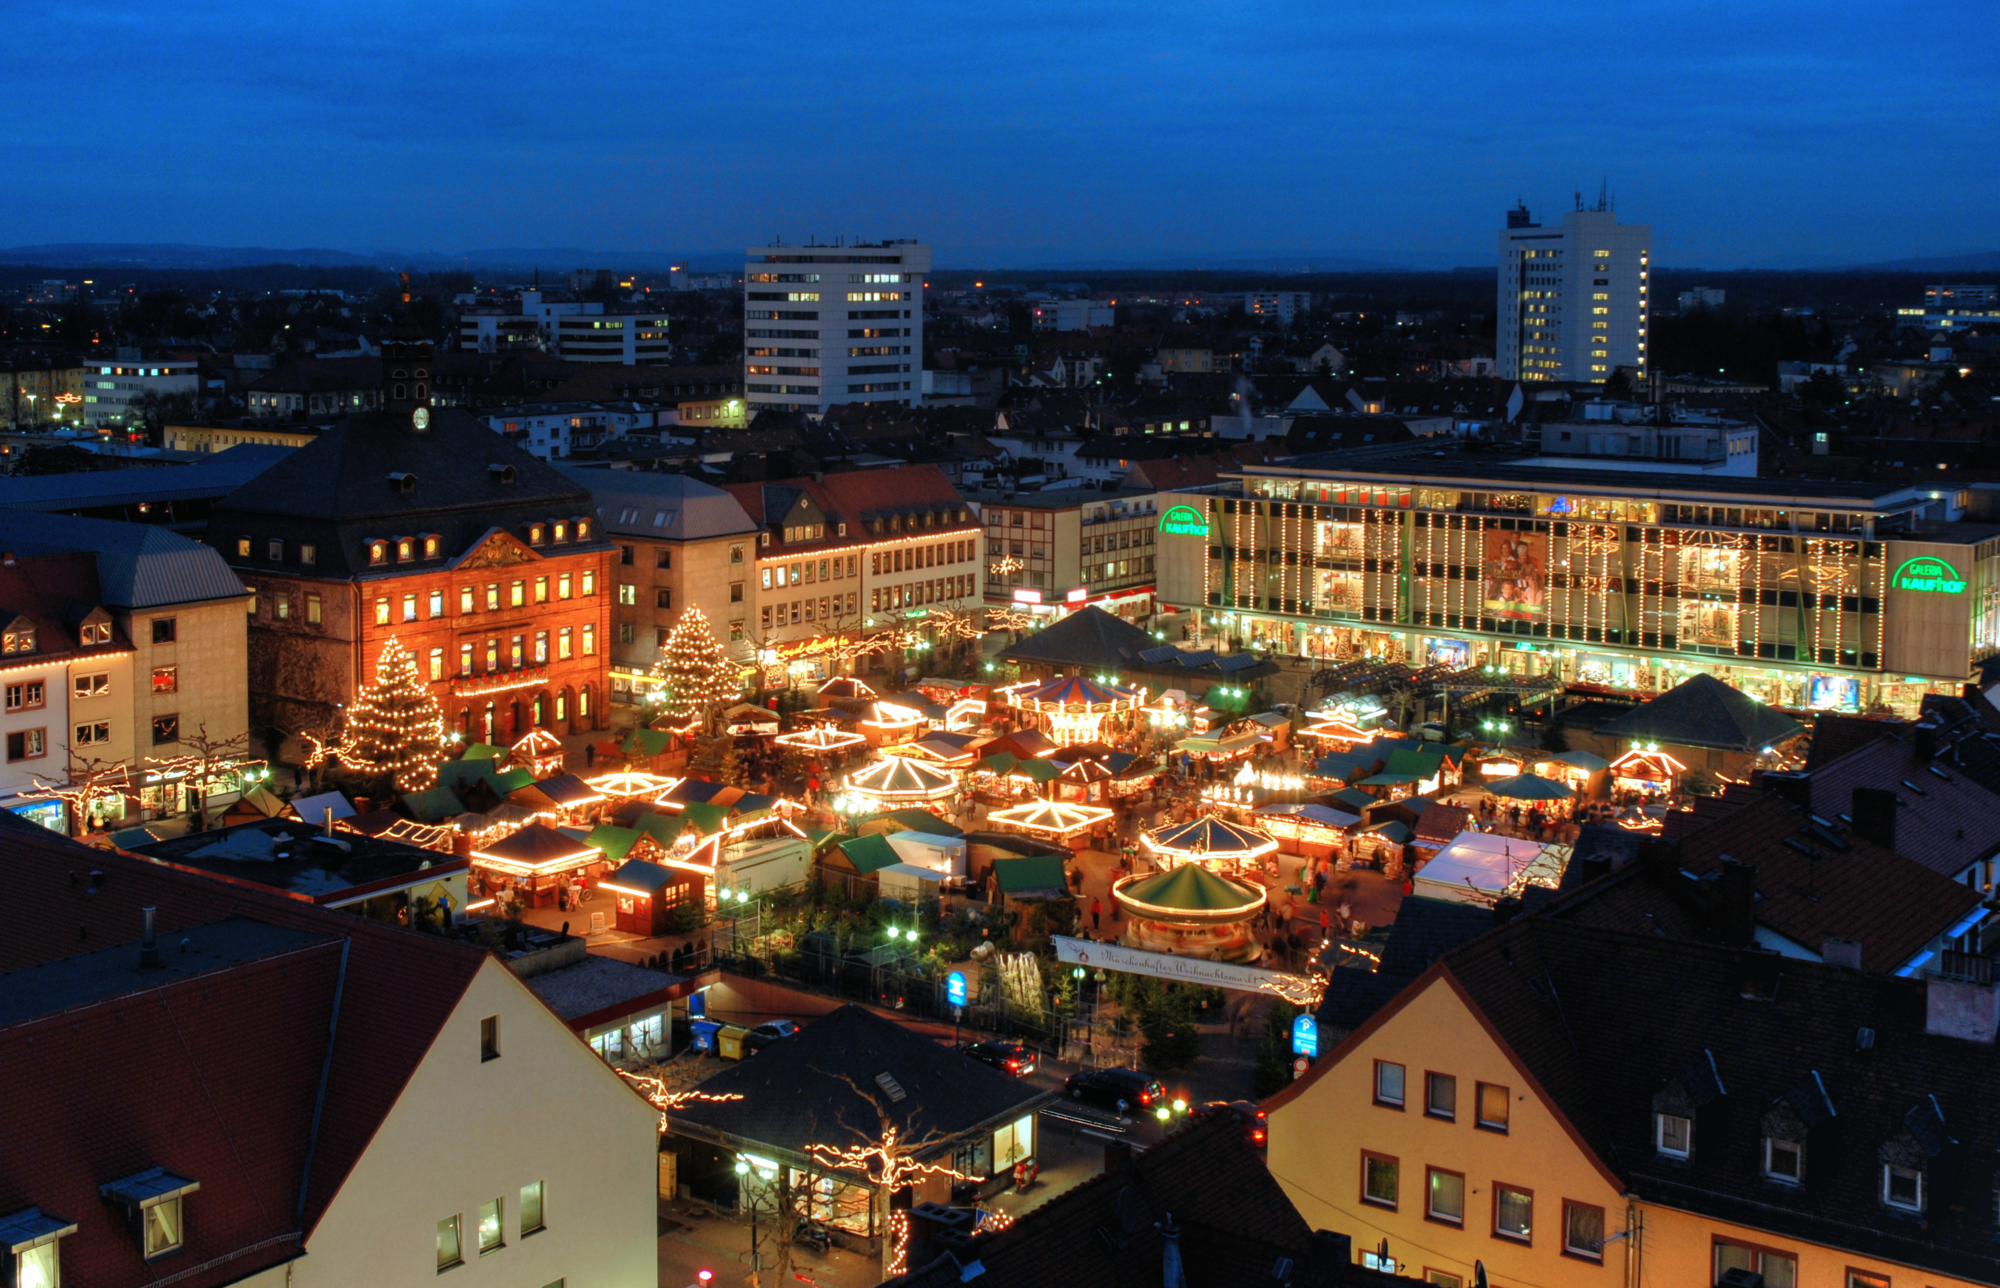 sliderimage-Marktplatz Weihnachtsmarkt